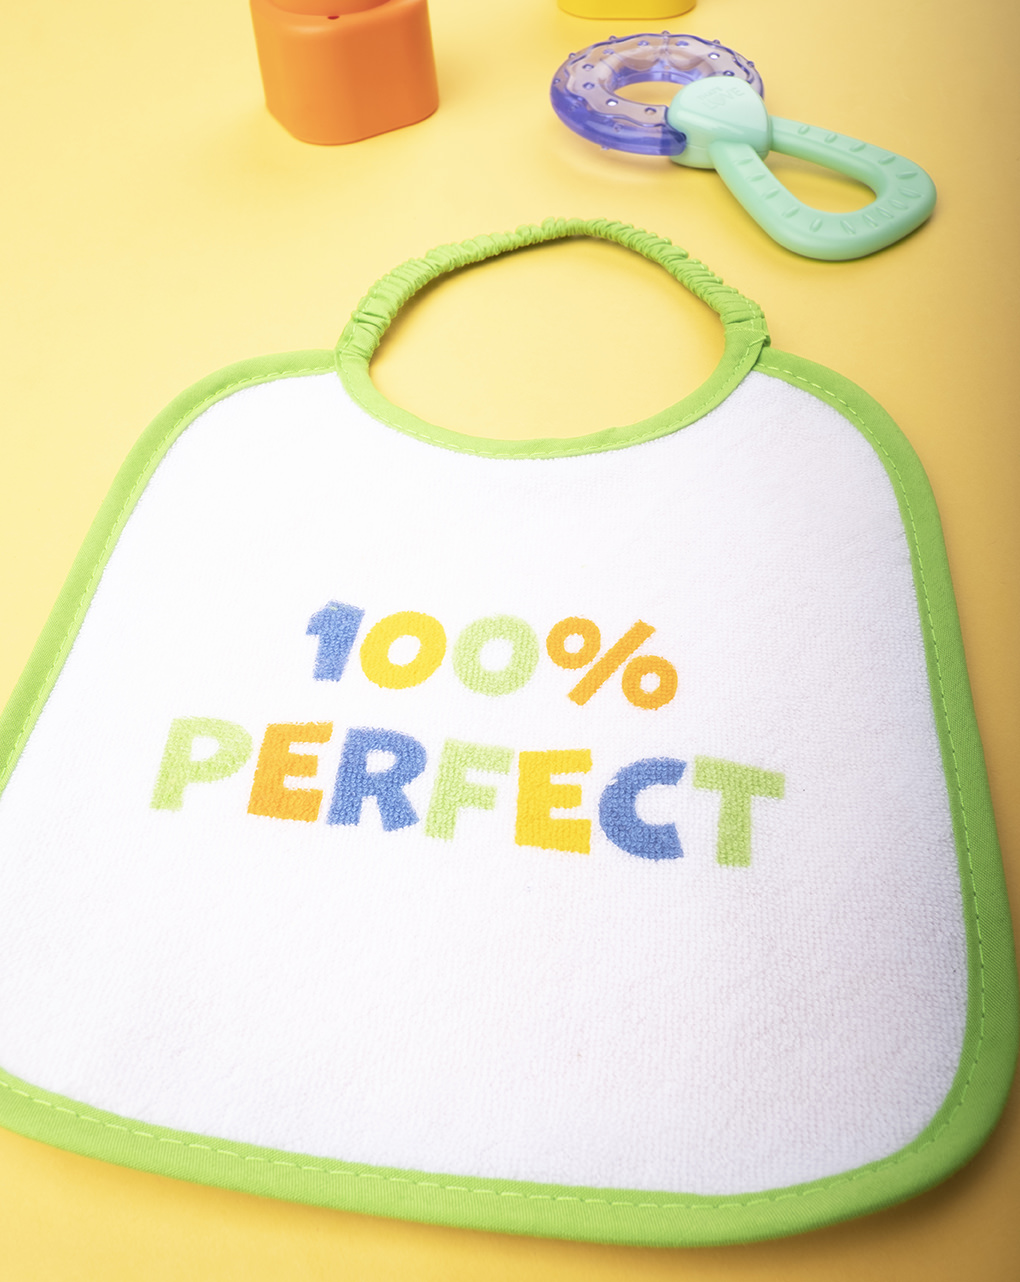 Babete menino verde "100% perfeito" - Prénatal